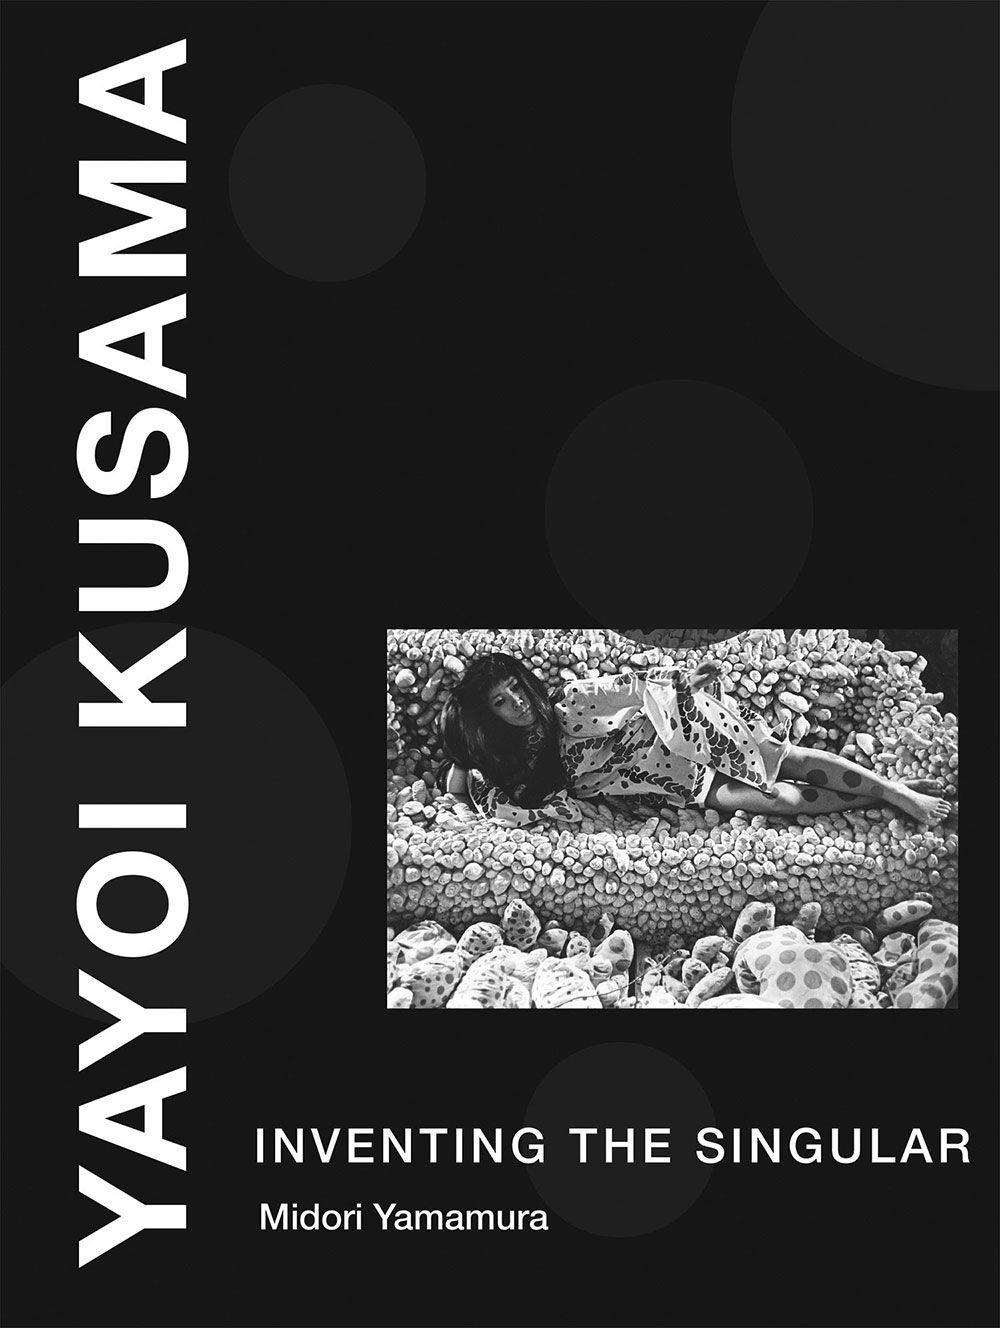 biography of yayoi kusama